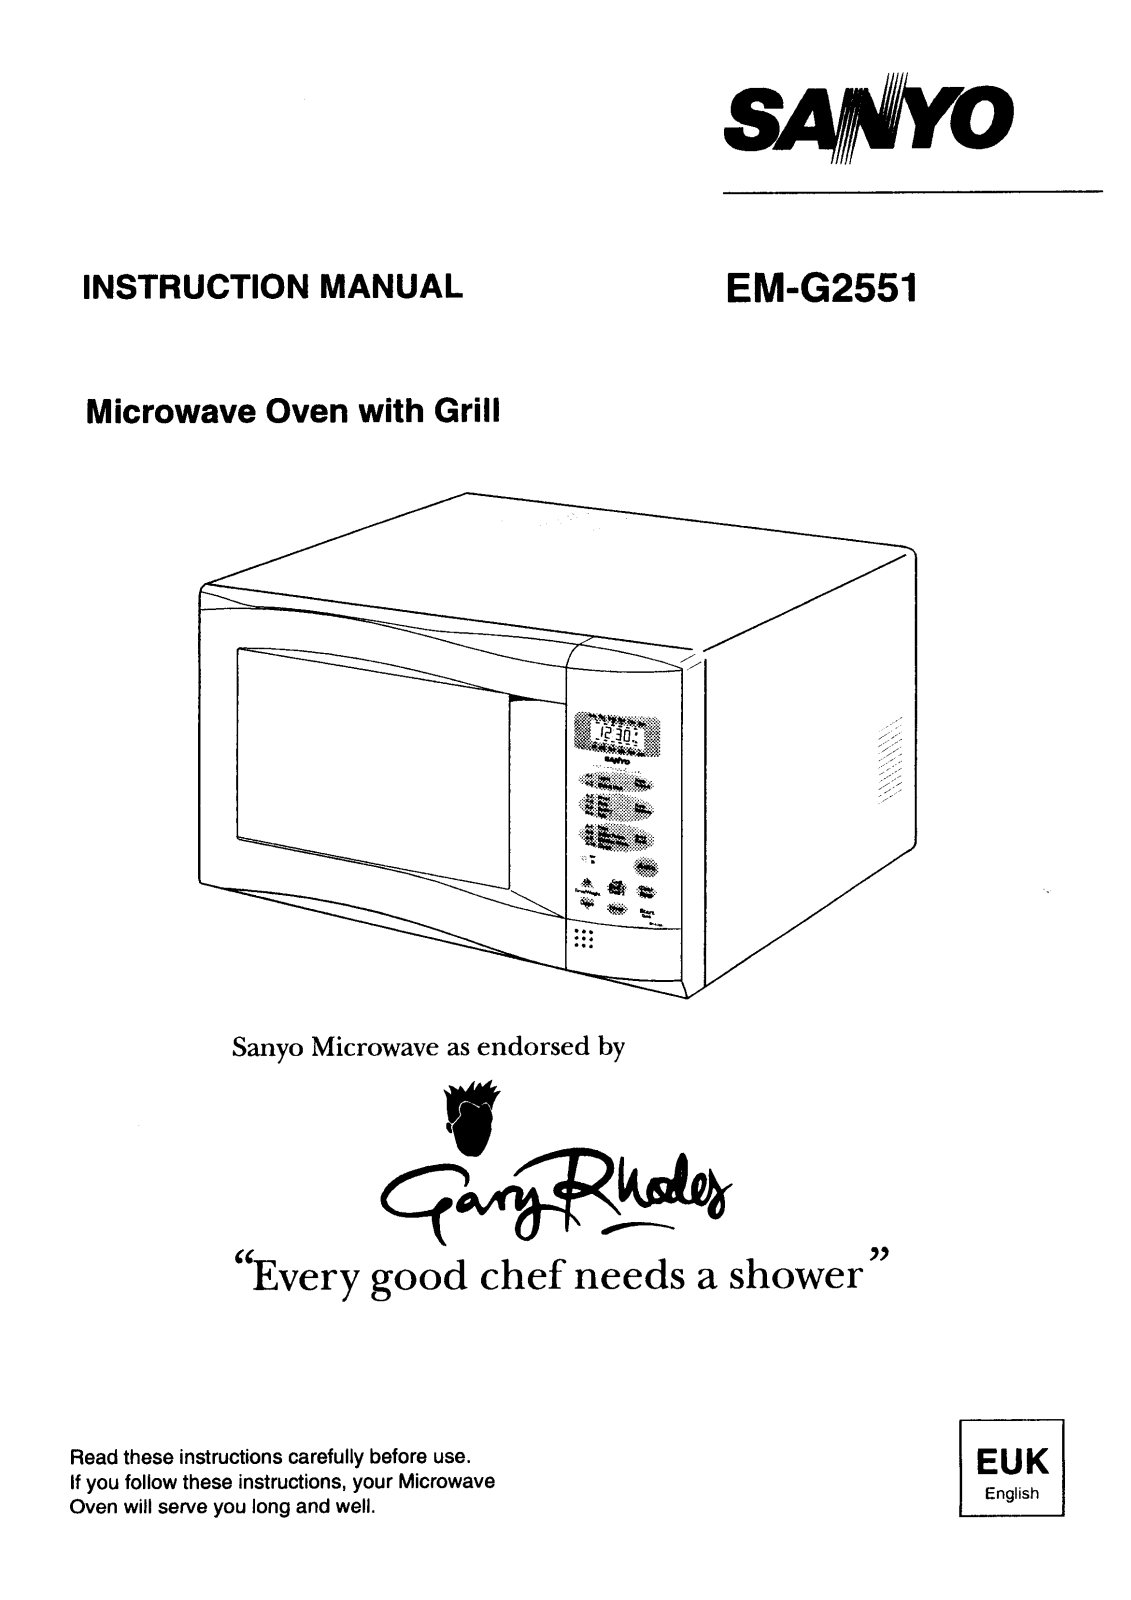 Sanyo EM-G2551 Instruction Manual